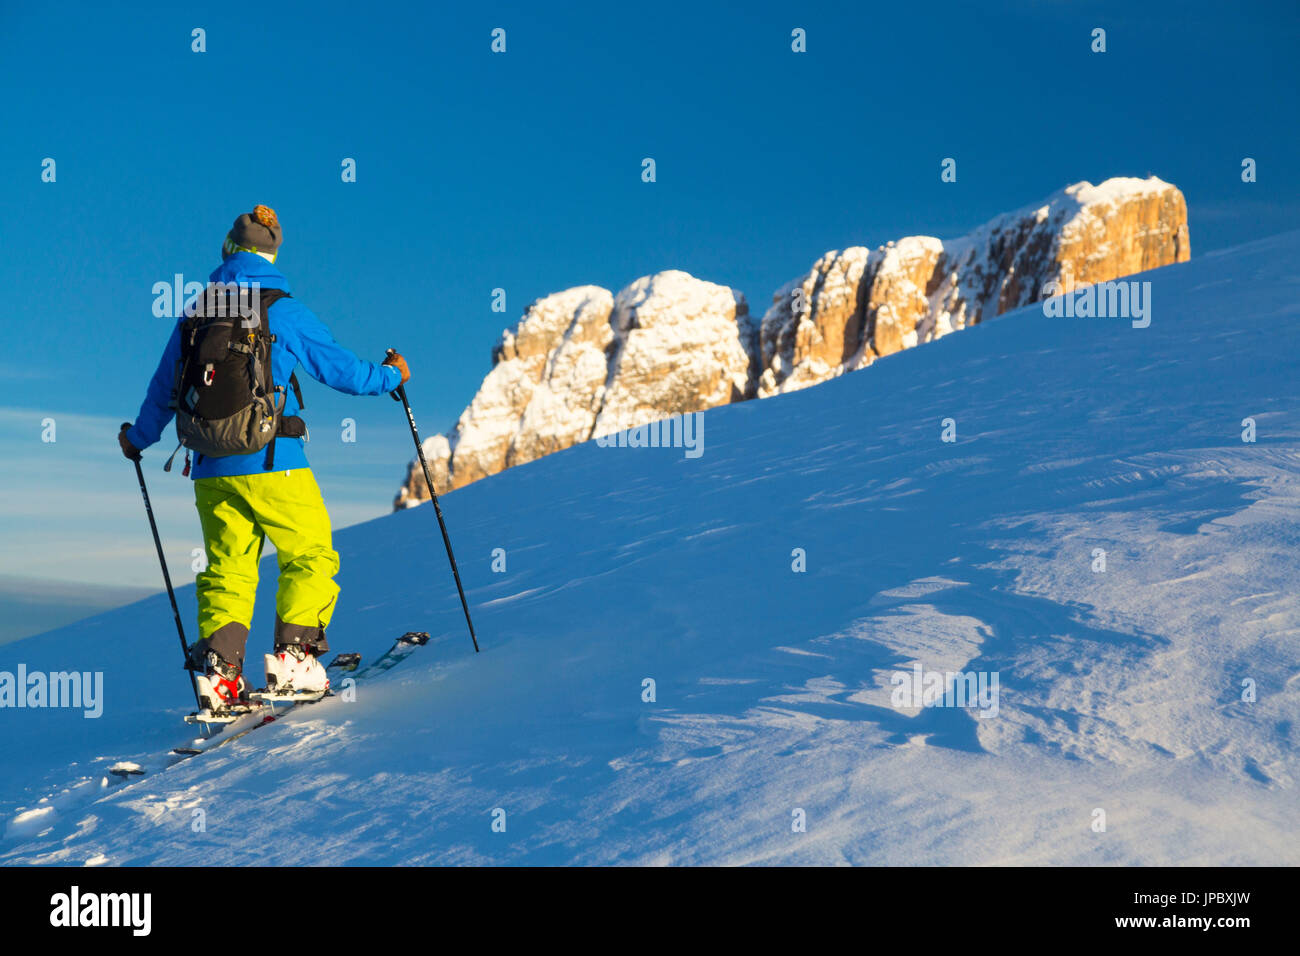 Ski touring on Croda Negra, on the background Averau peak. Passo Falzarego, Veneto, Italy. Stock Photo